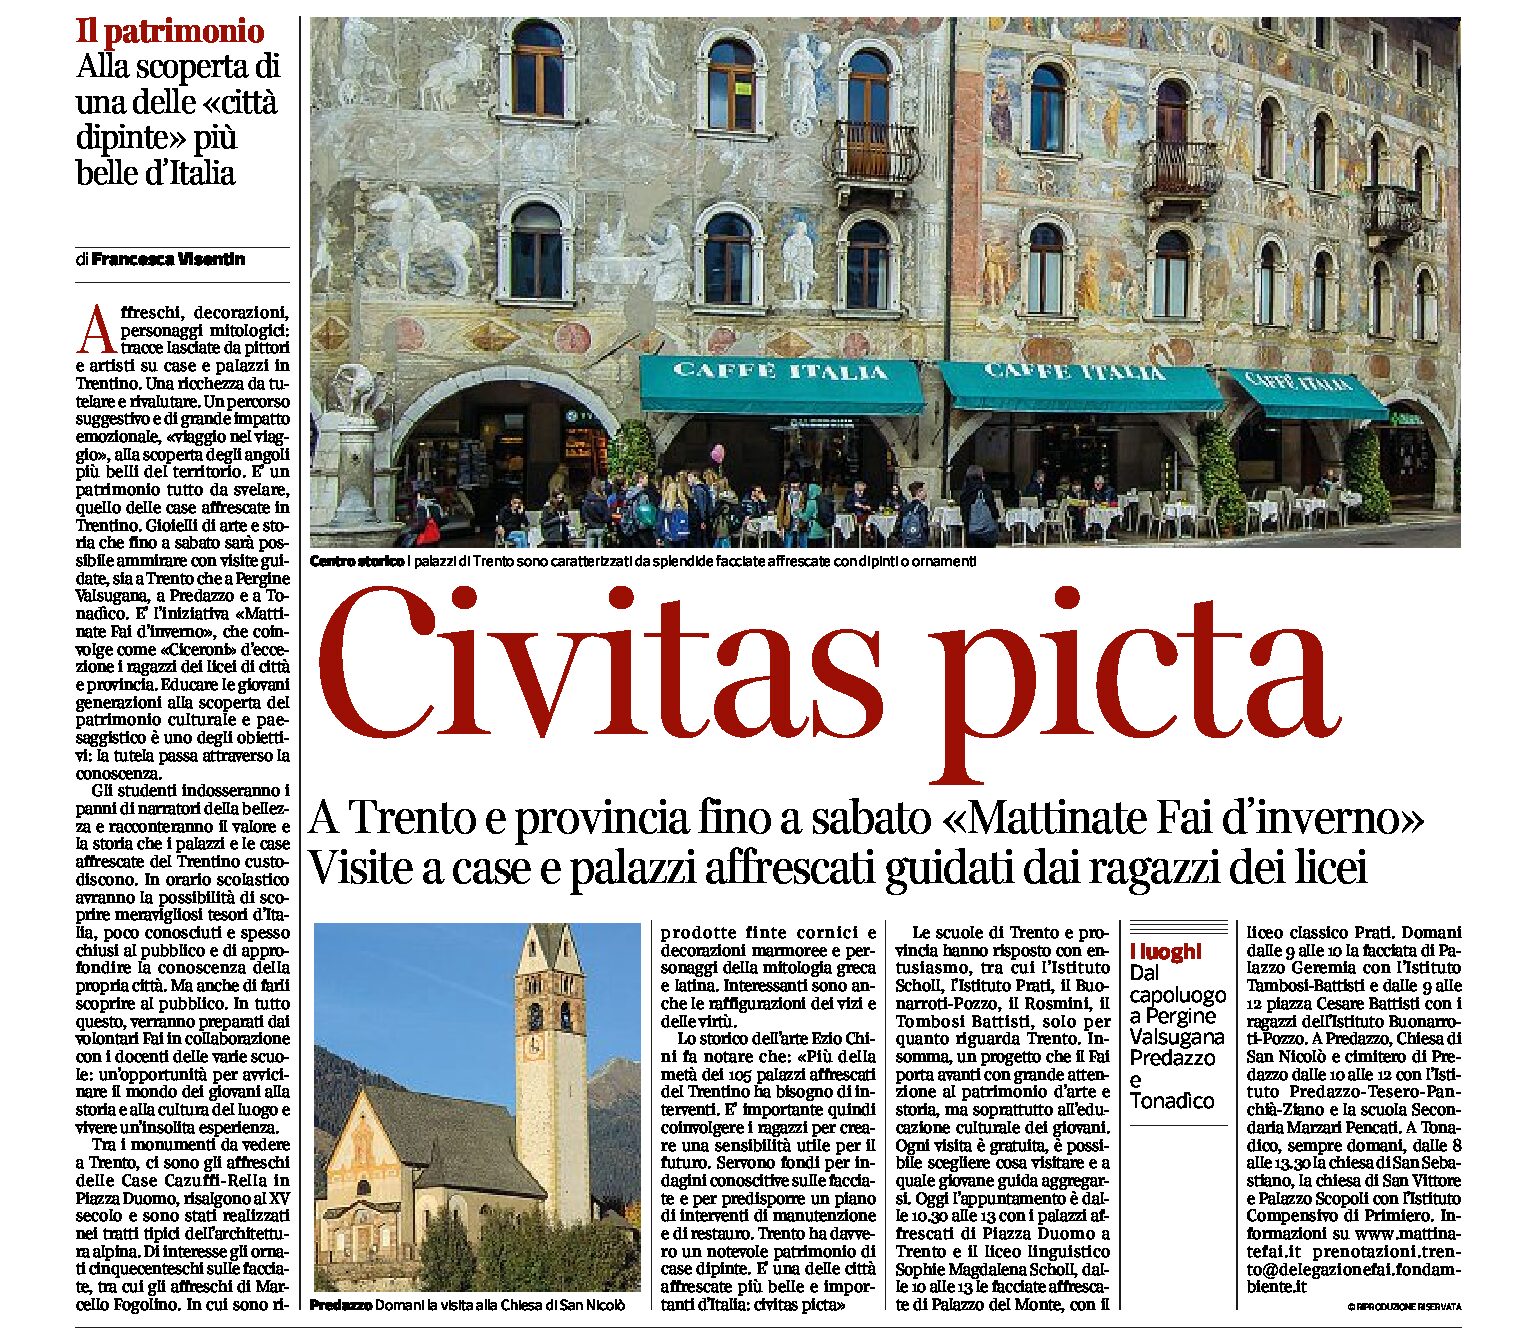 Trento, Mattinate del Fai: Civitas picta, gli studenti apprendisti Ciceroni